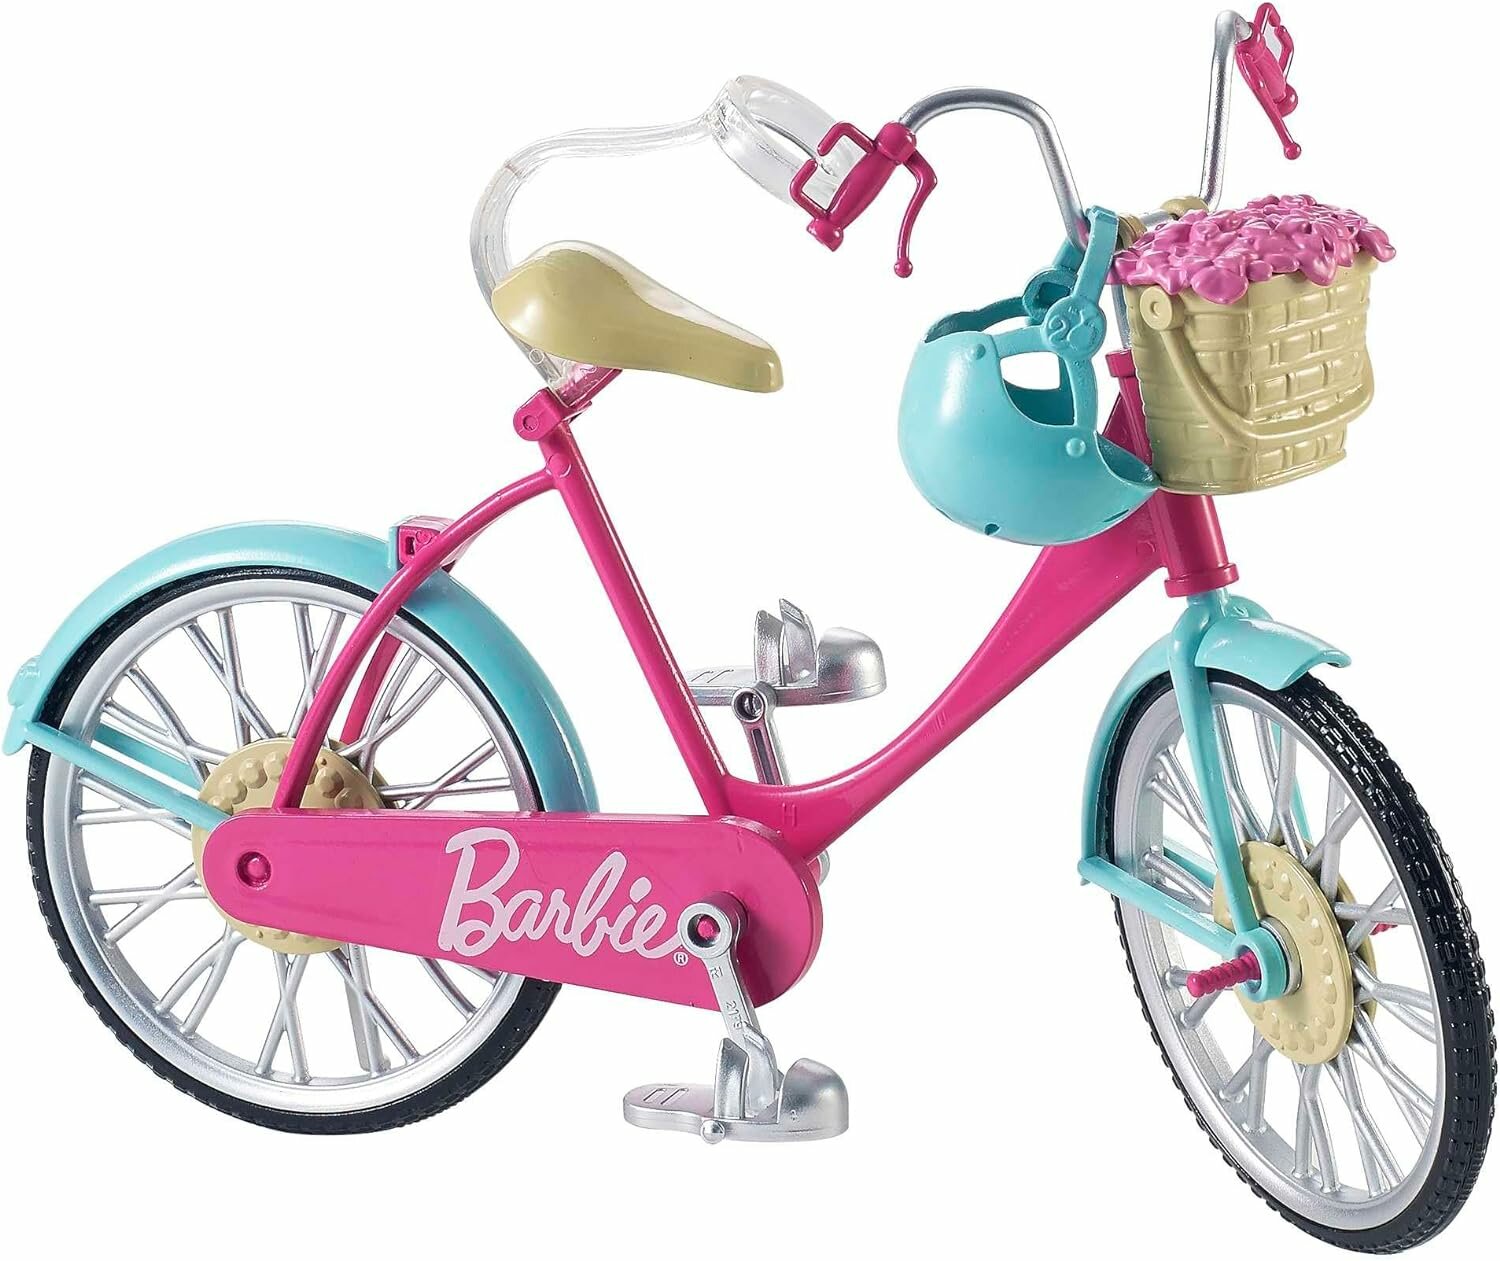 Игровой набор Велосипед для кукол Барби с корзиной цветов, Barbie Bicycle with Basket of Flowers DVX55